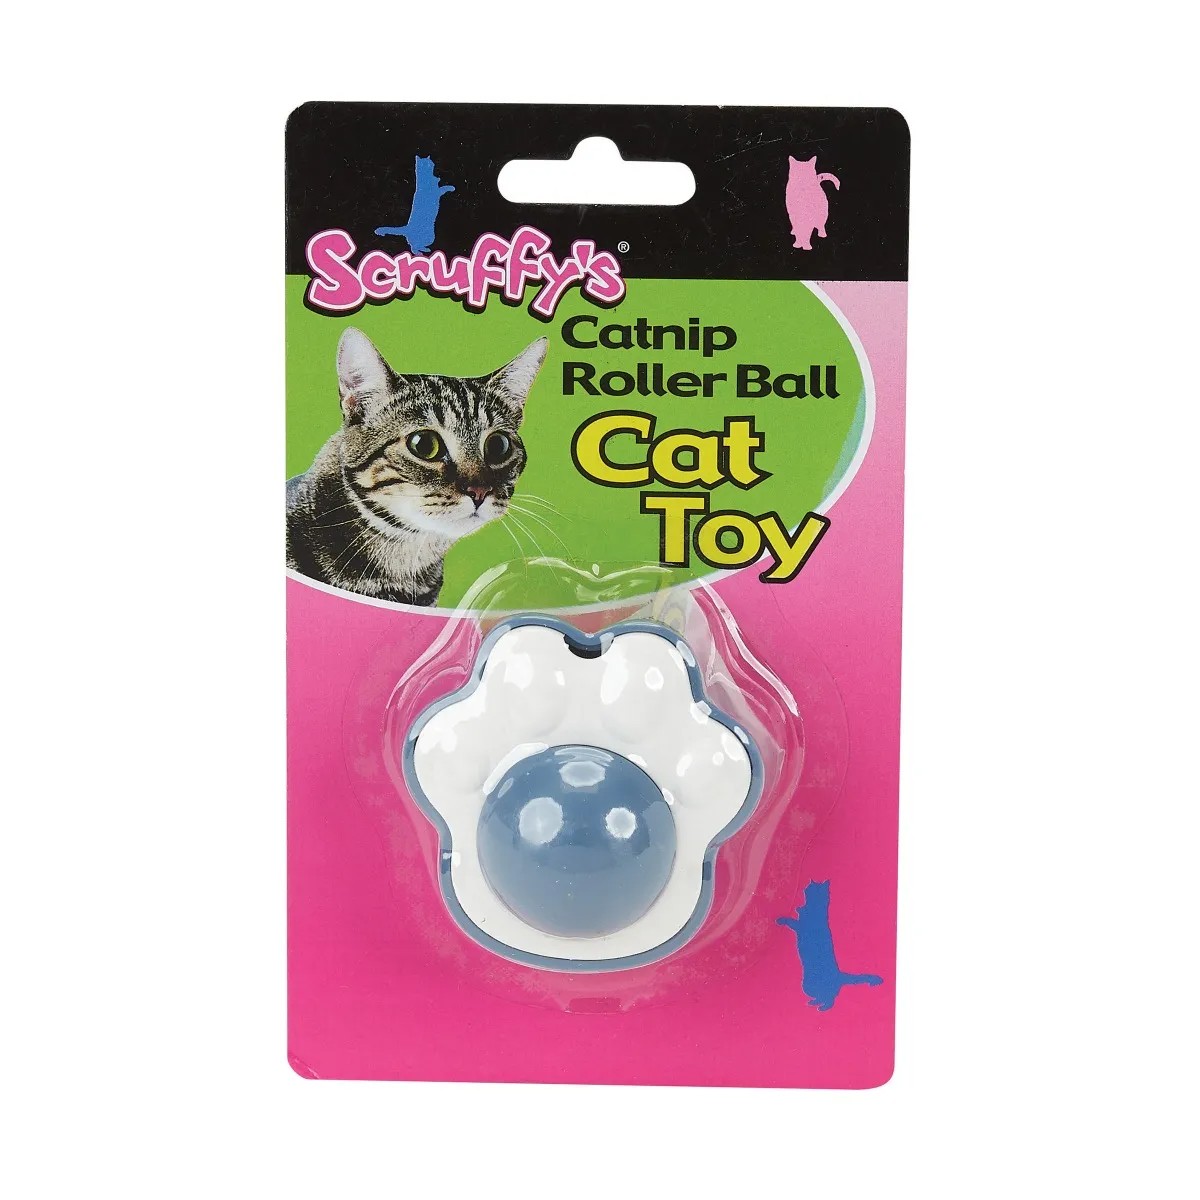 Scruffy's Catnip Roller Ball Cat Toy